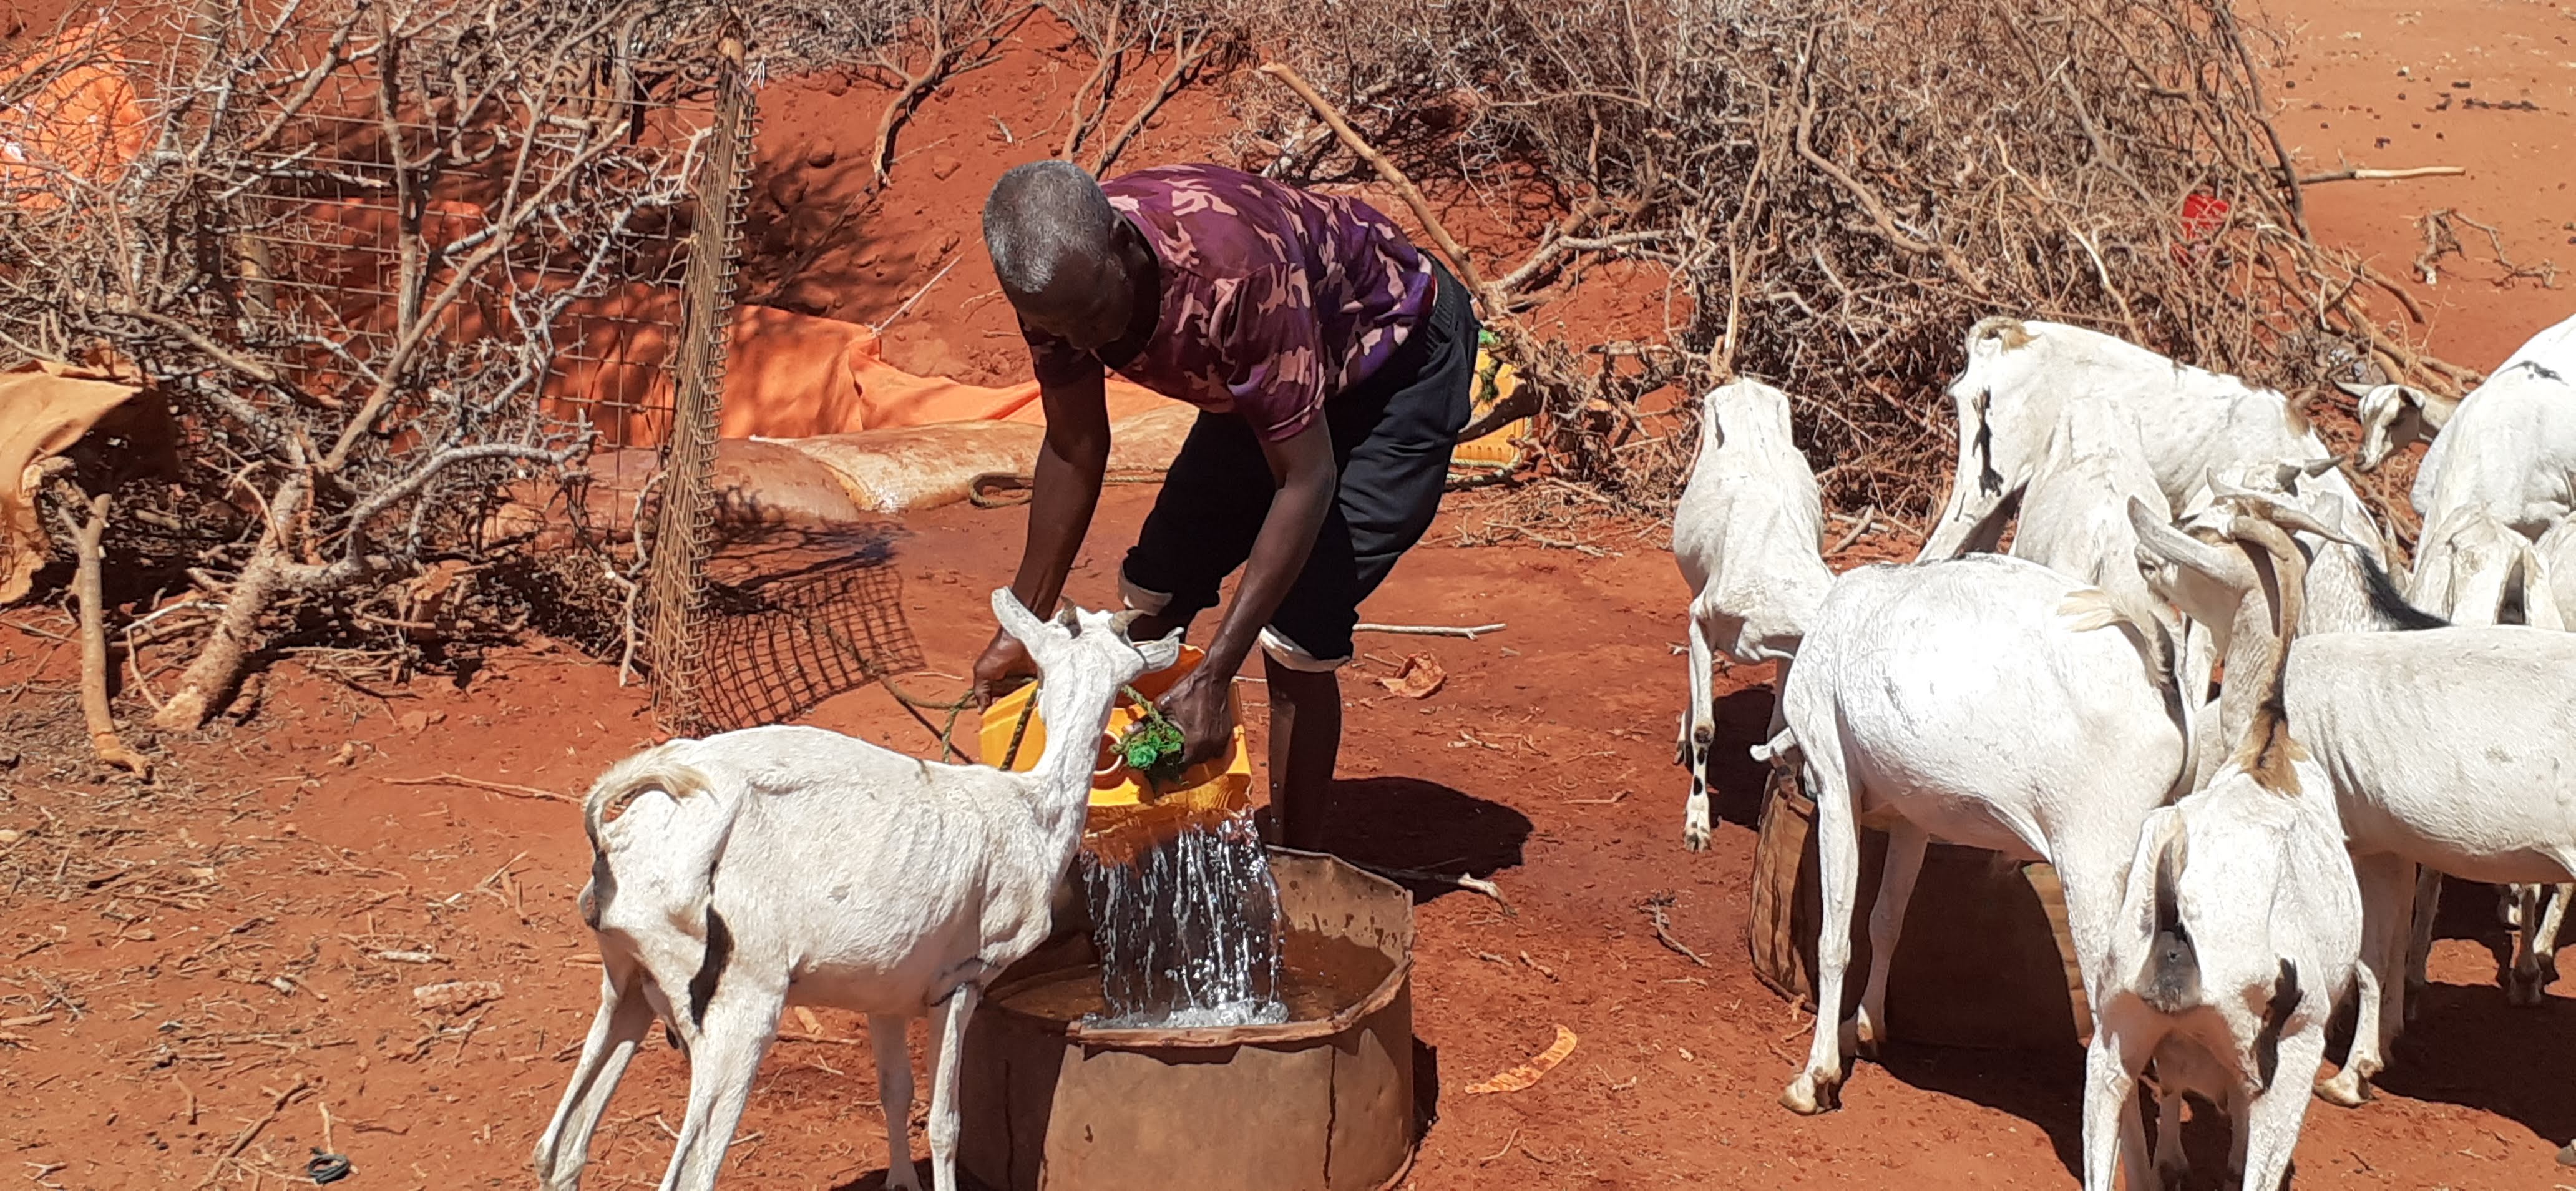 Mann schüttet Wasser in großen Eimer. Davor und daneben warten Ziegen